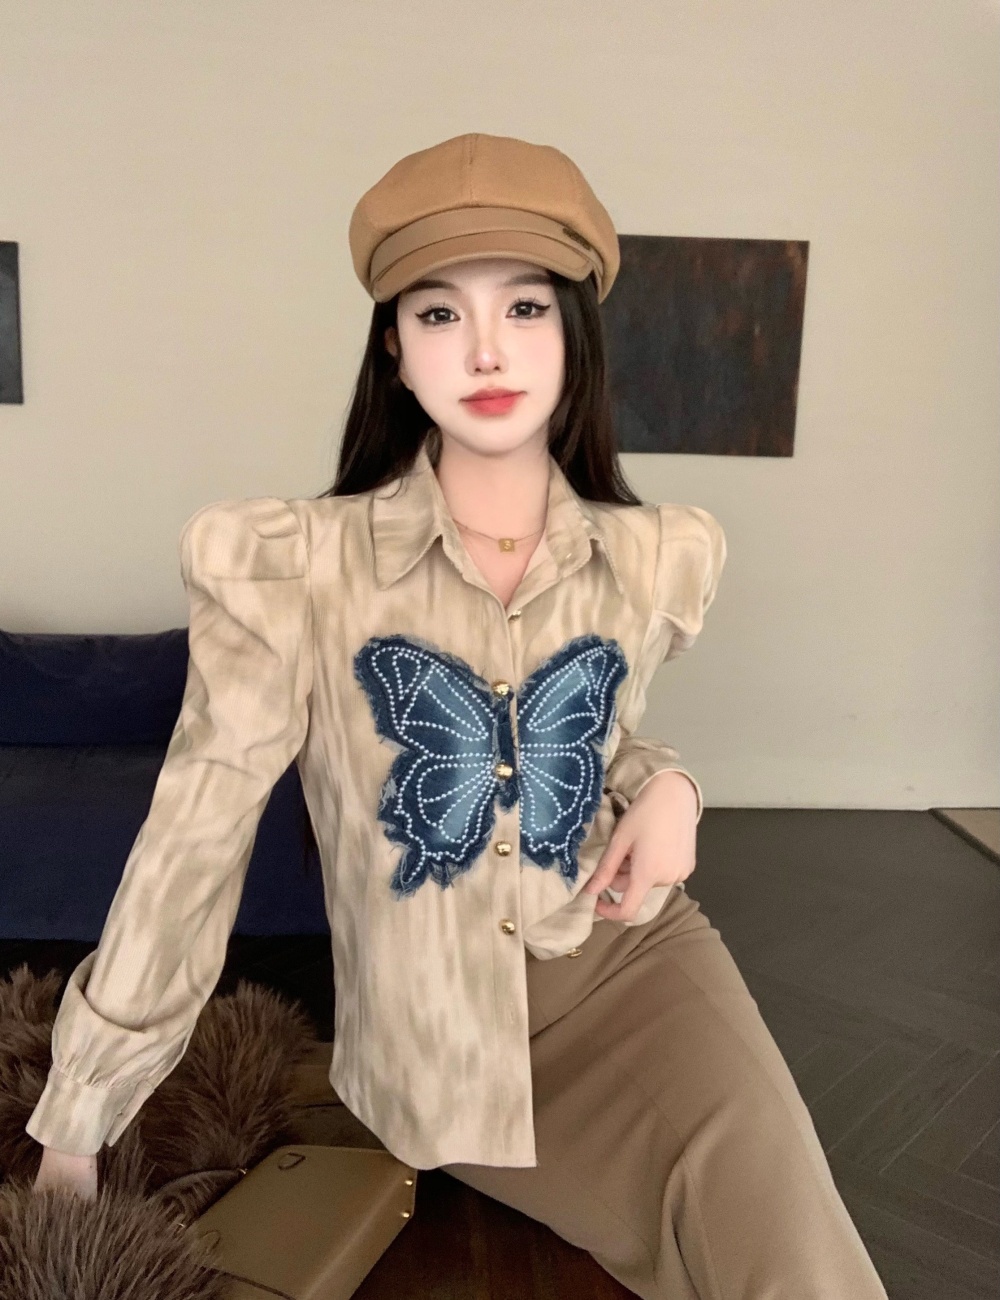 Butterfly skirt denim shirt a set for women